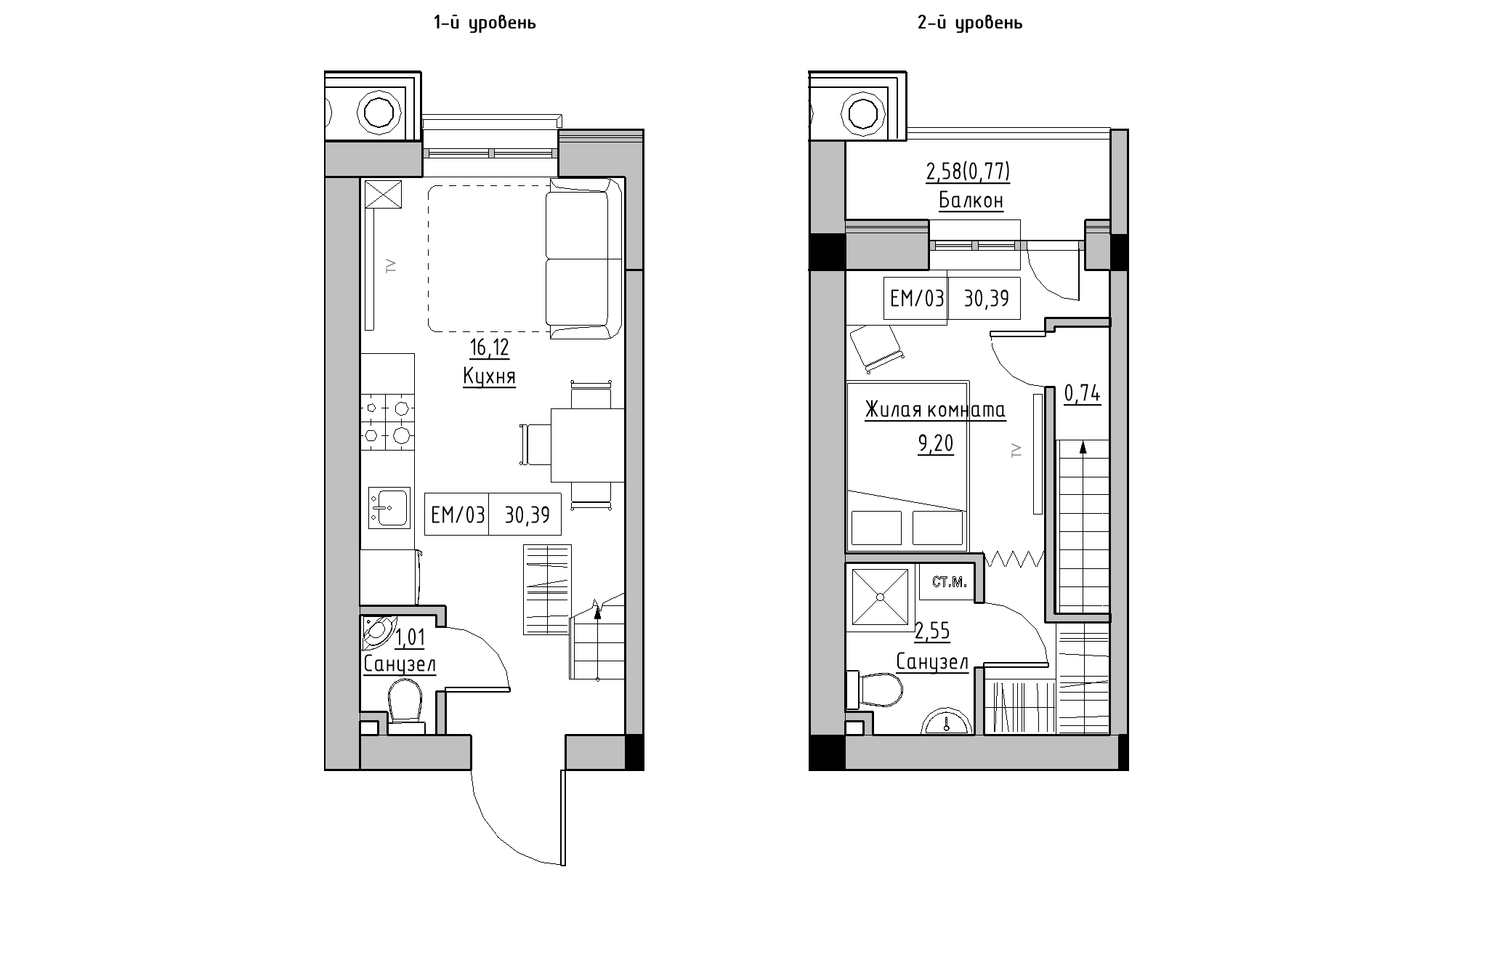 Planning 2-lvl flats area 30.39m2, KS-010-05/0009.